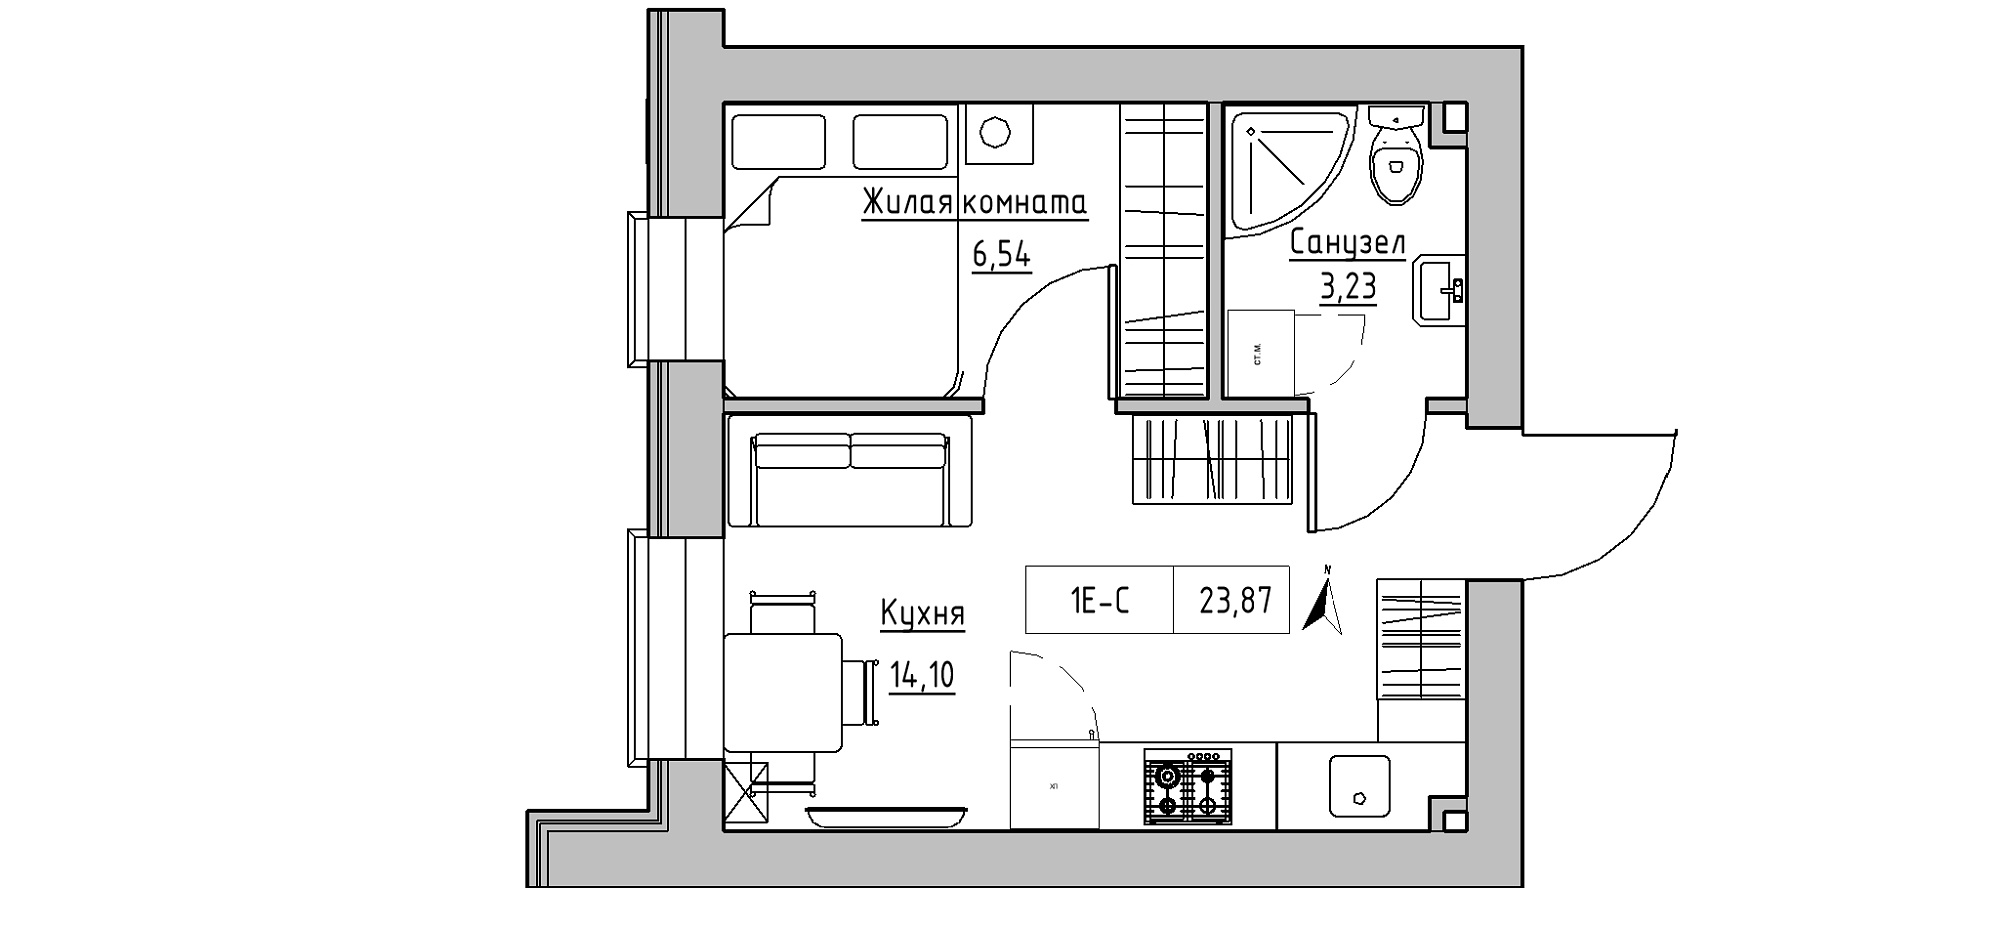 Планування 1-к квартира площею 23.87м2, KS-020-04/0012.